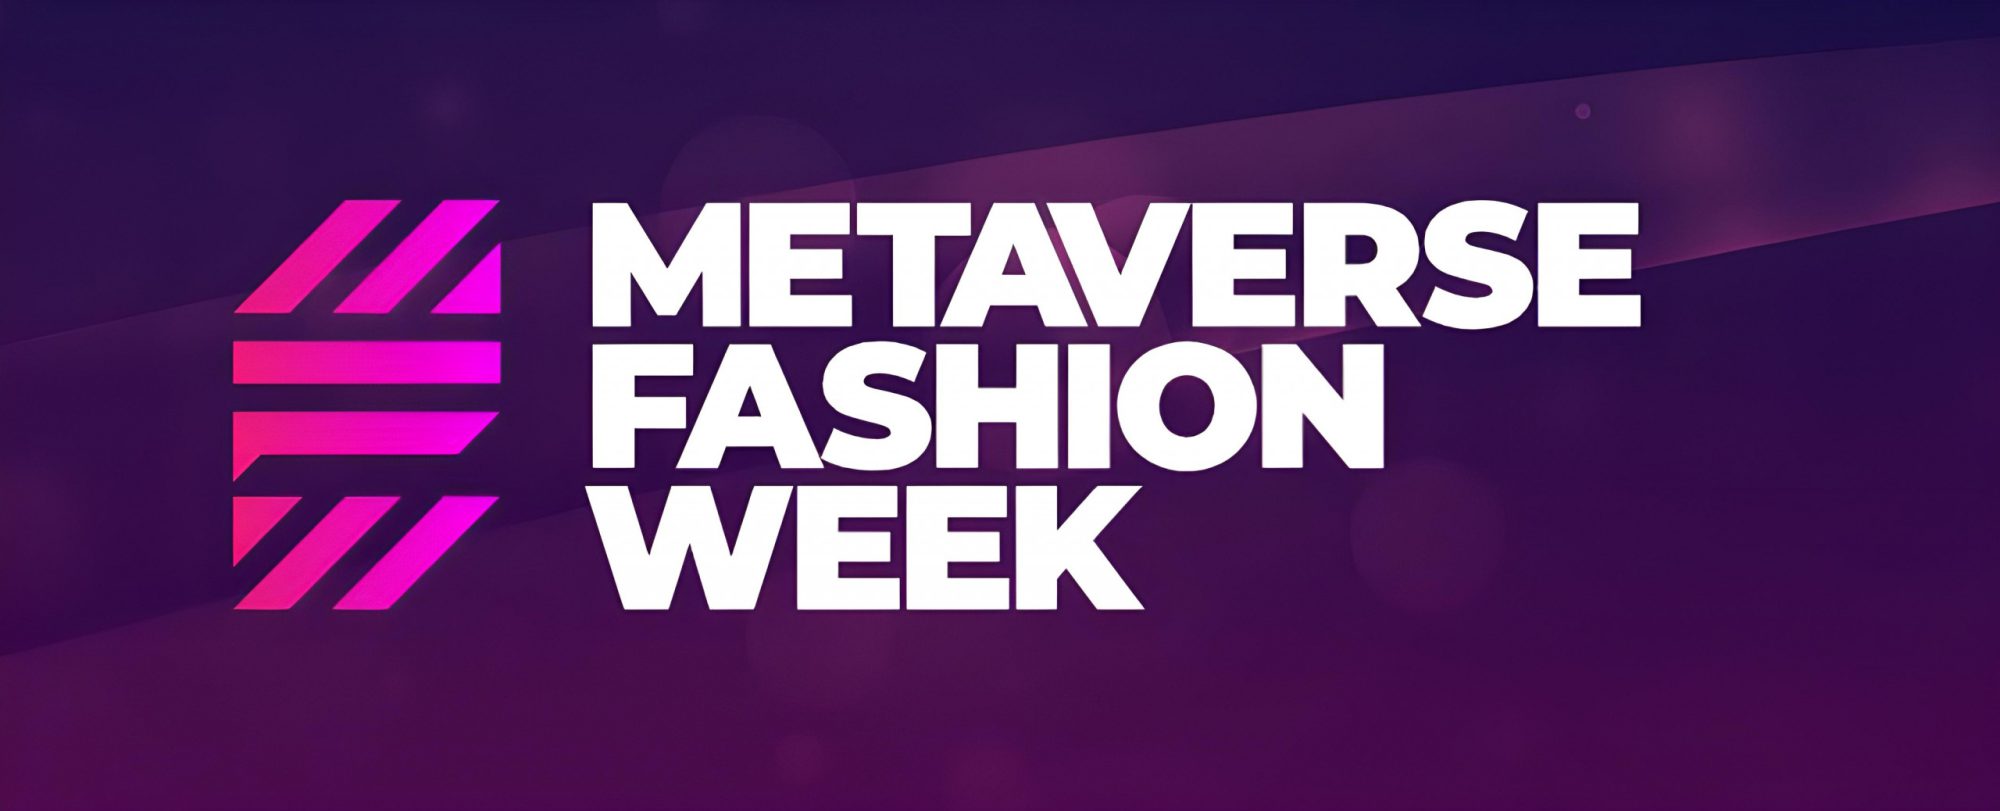 metaversein-ilk-moda-haftasi-basliyor-guncel-haber